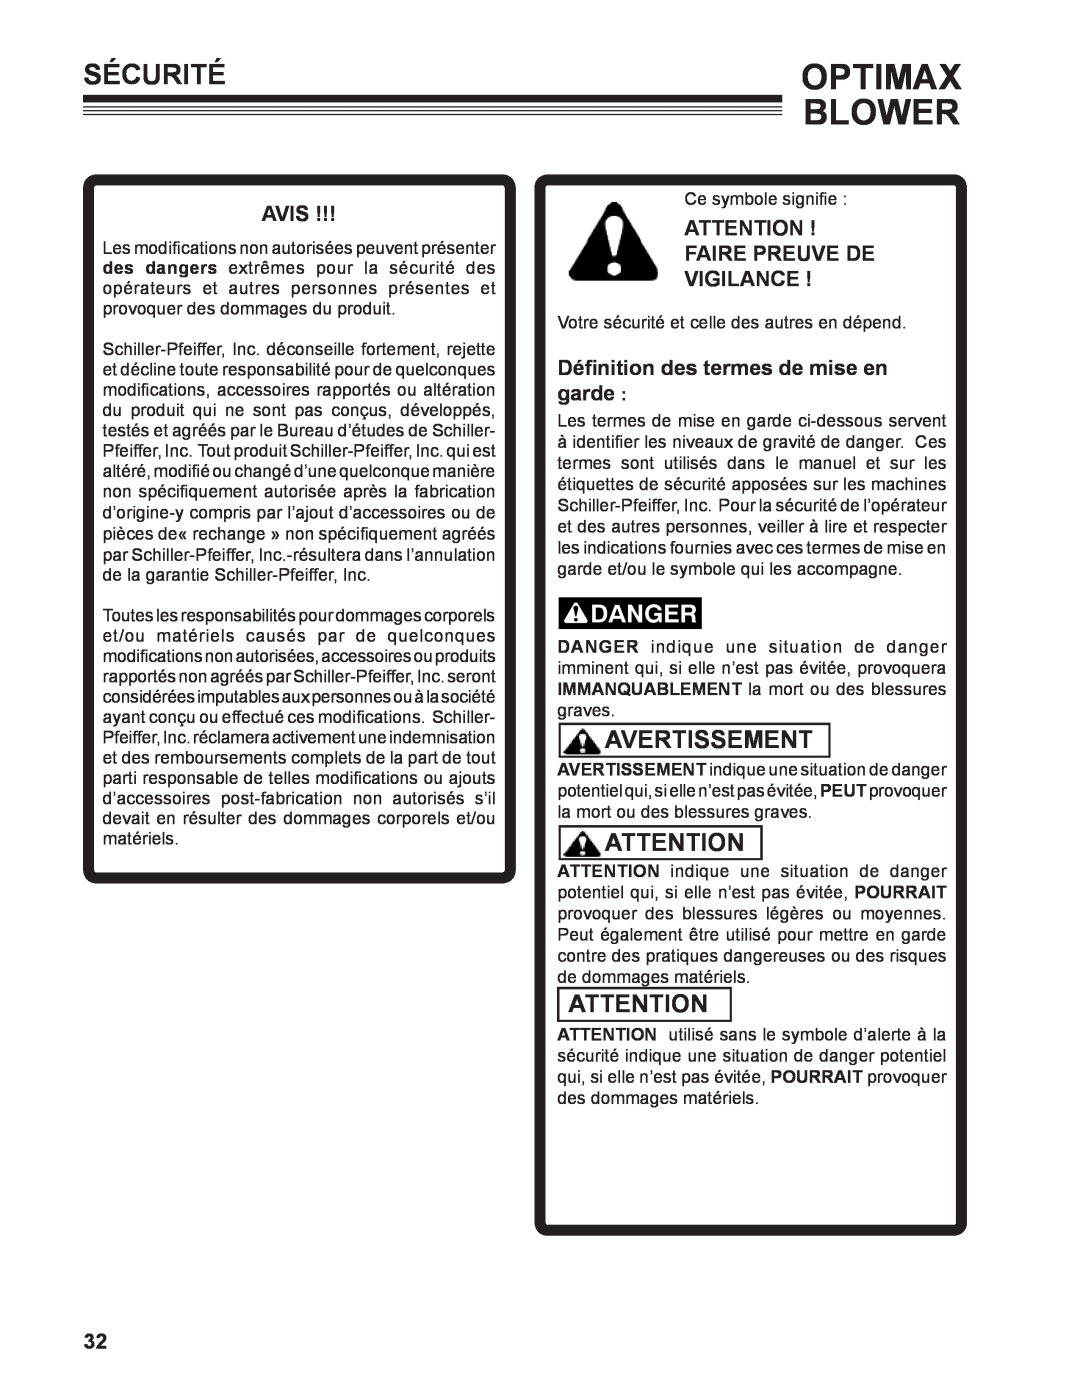 Little Wonder LB901-00-01 technical manual Sécuritéoptimax, Avertissement, Avis, Faire Preuve De Vigilance , Blower 